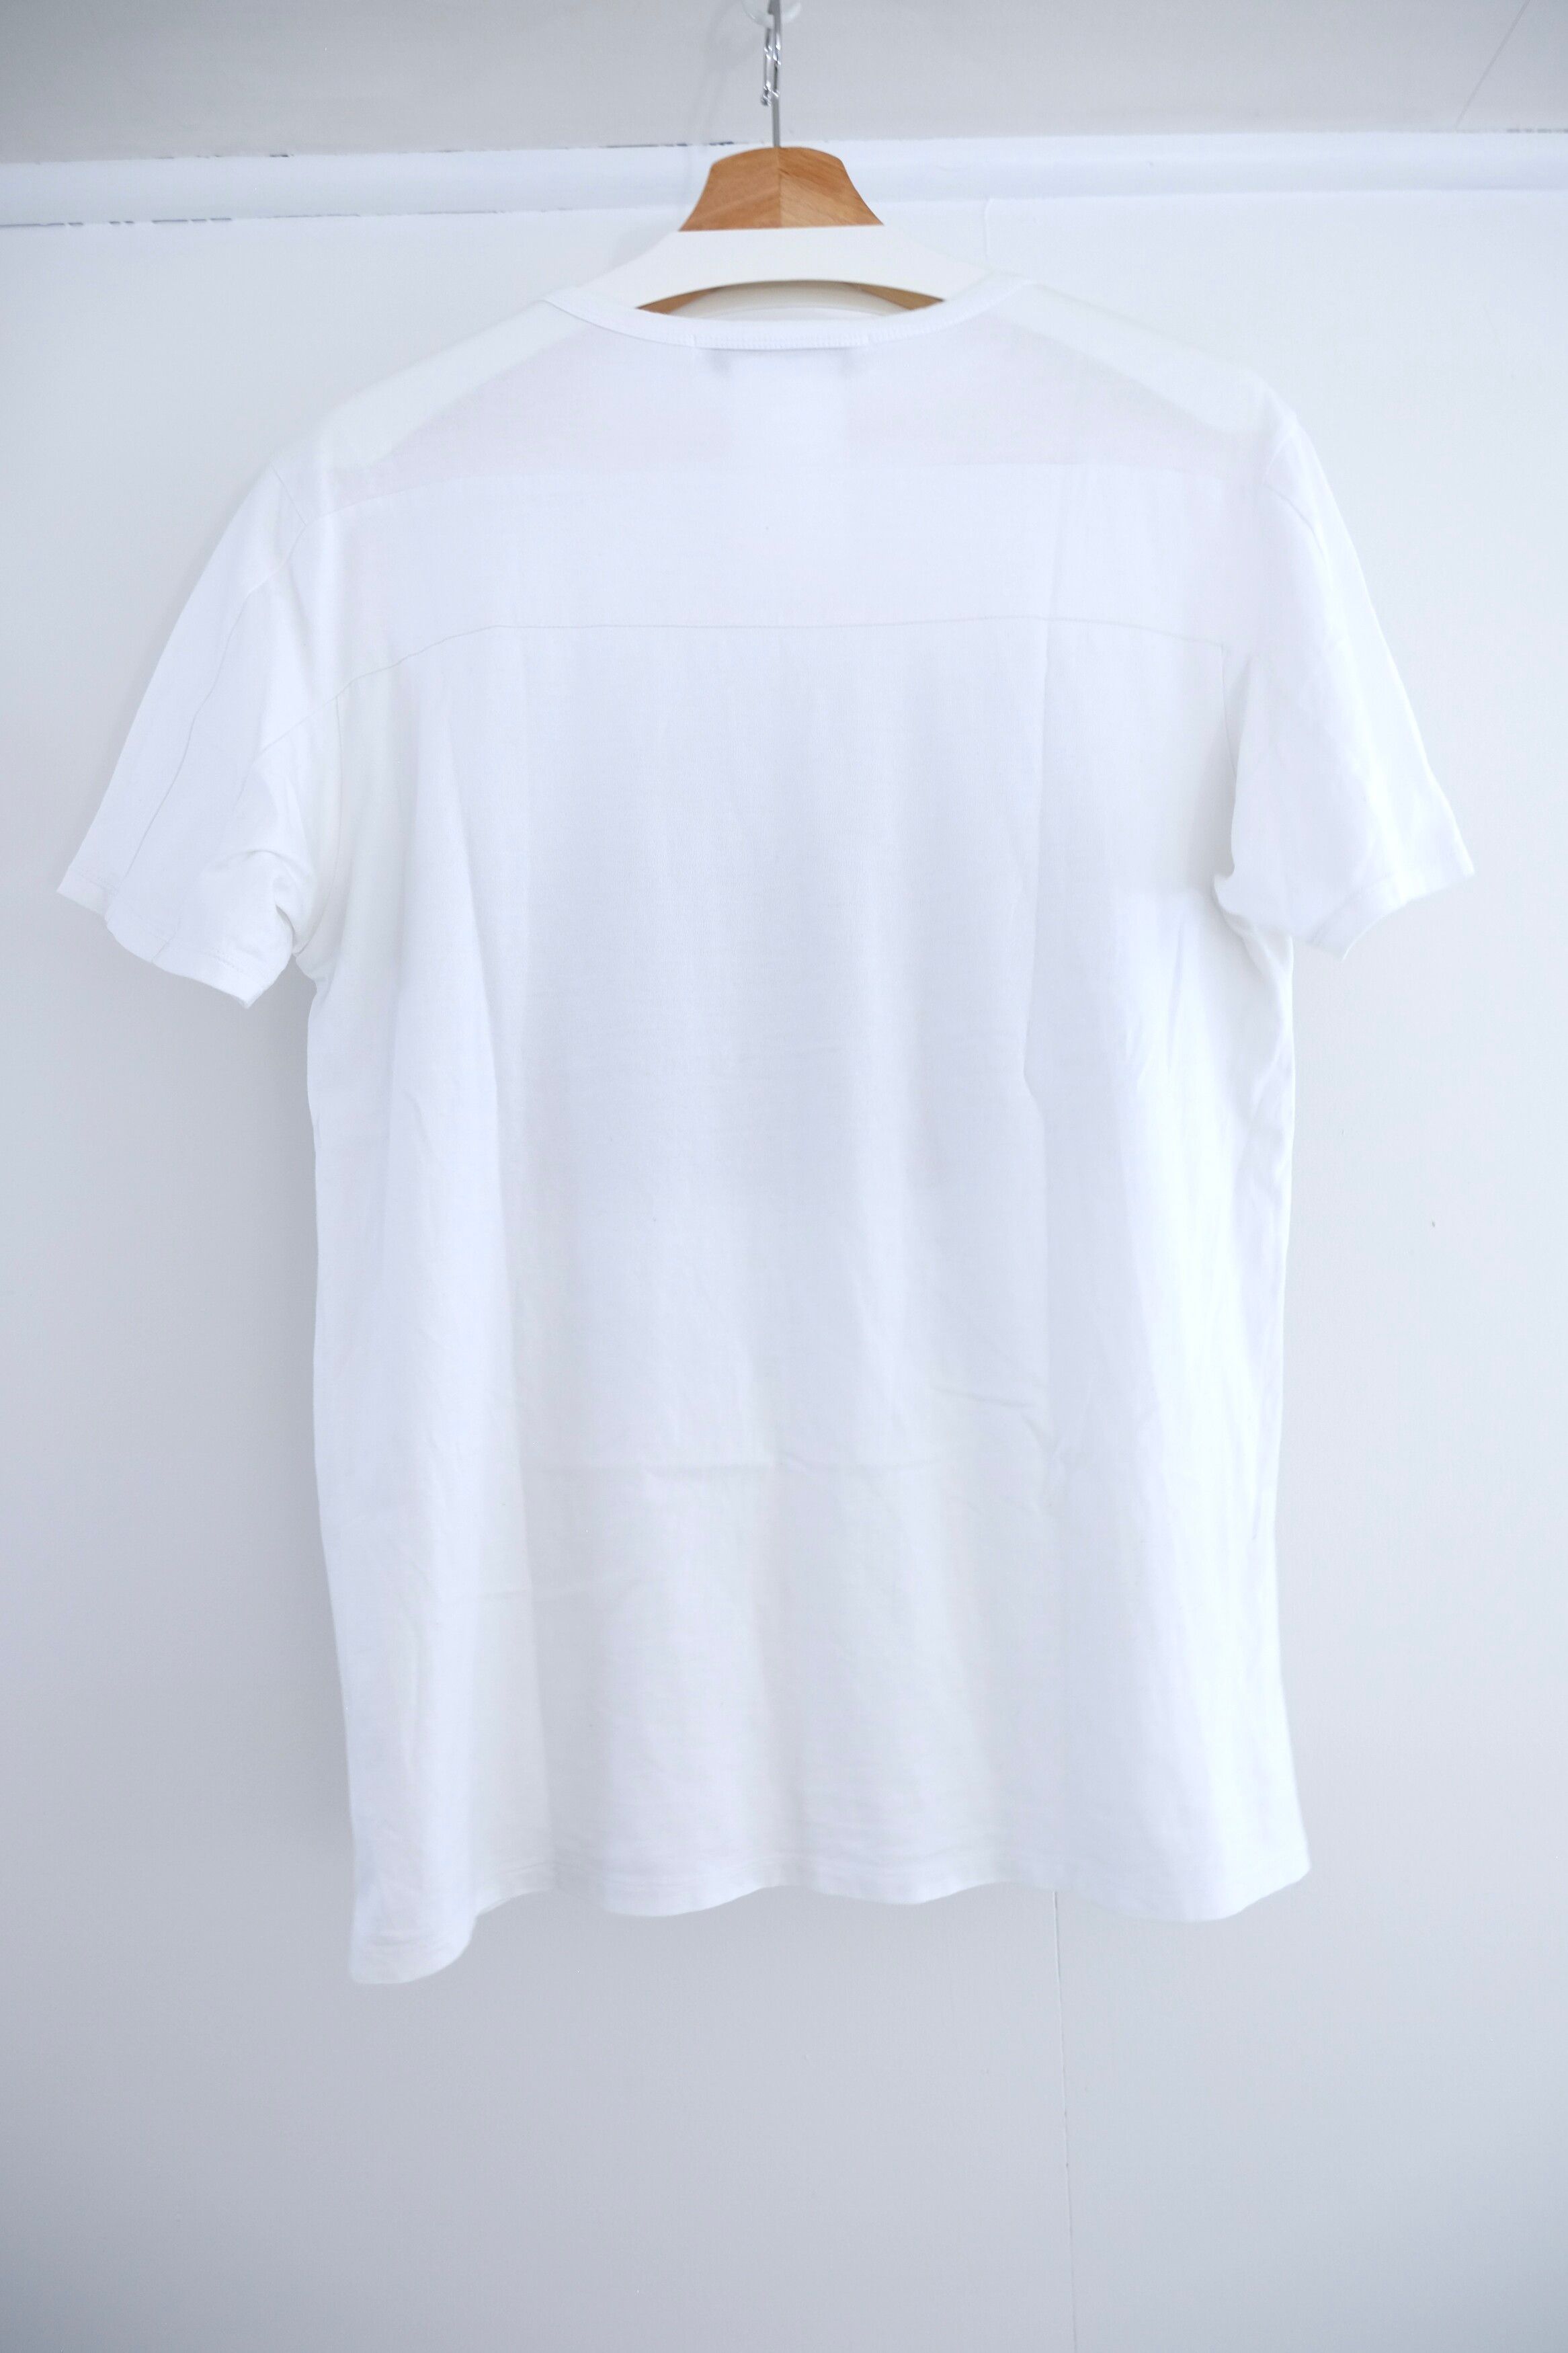 SS17 Cotton AR Ocean Shirt - 8